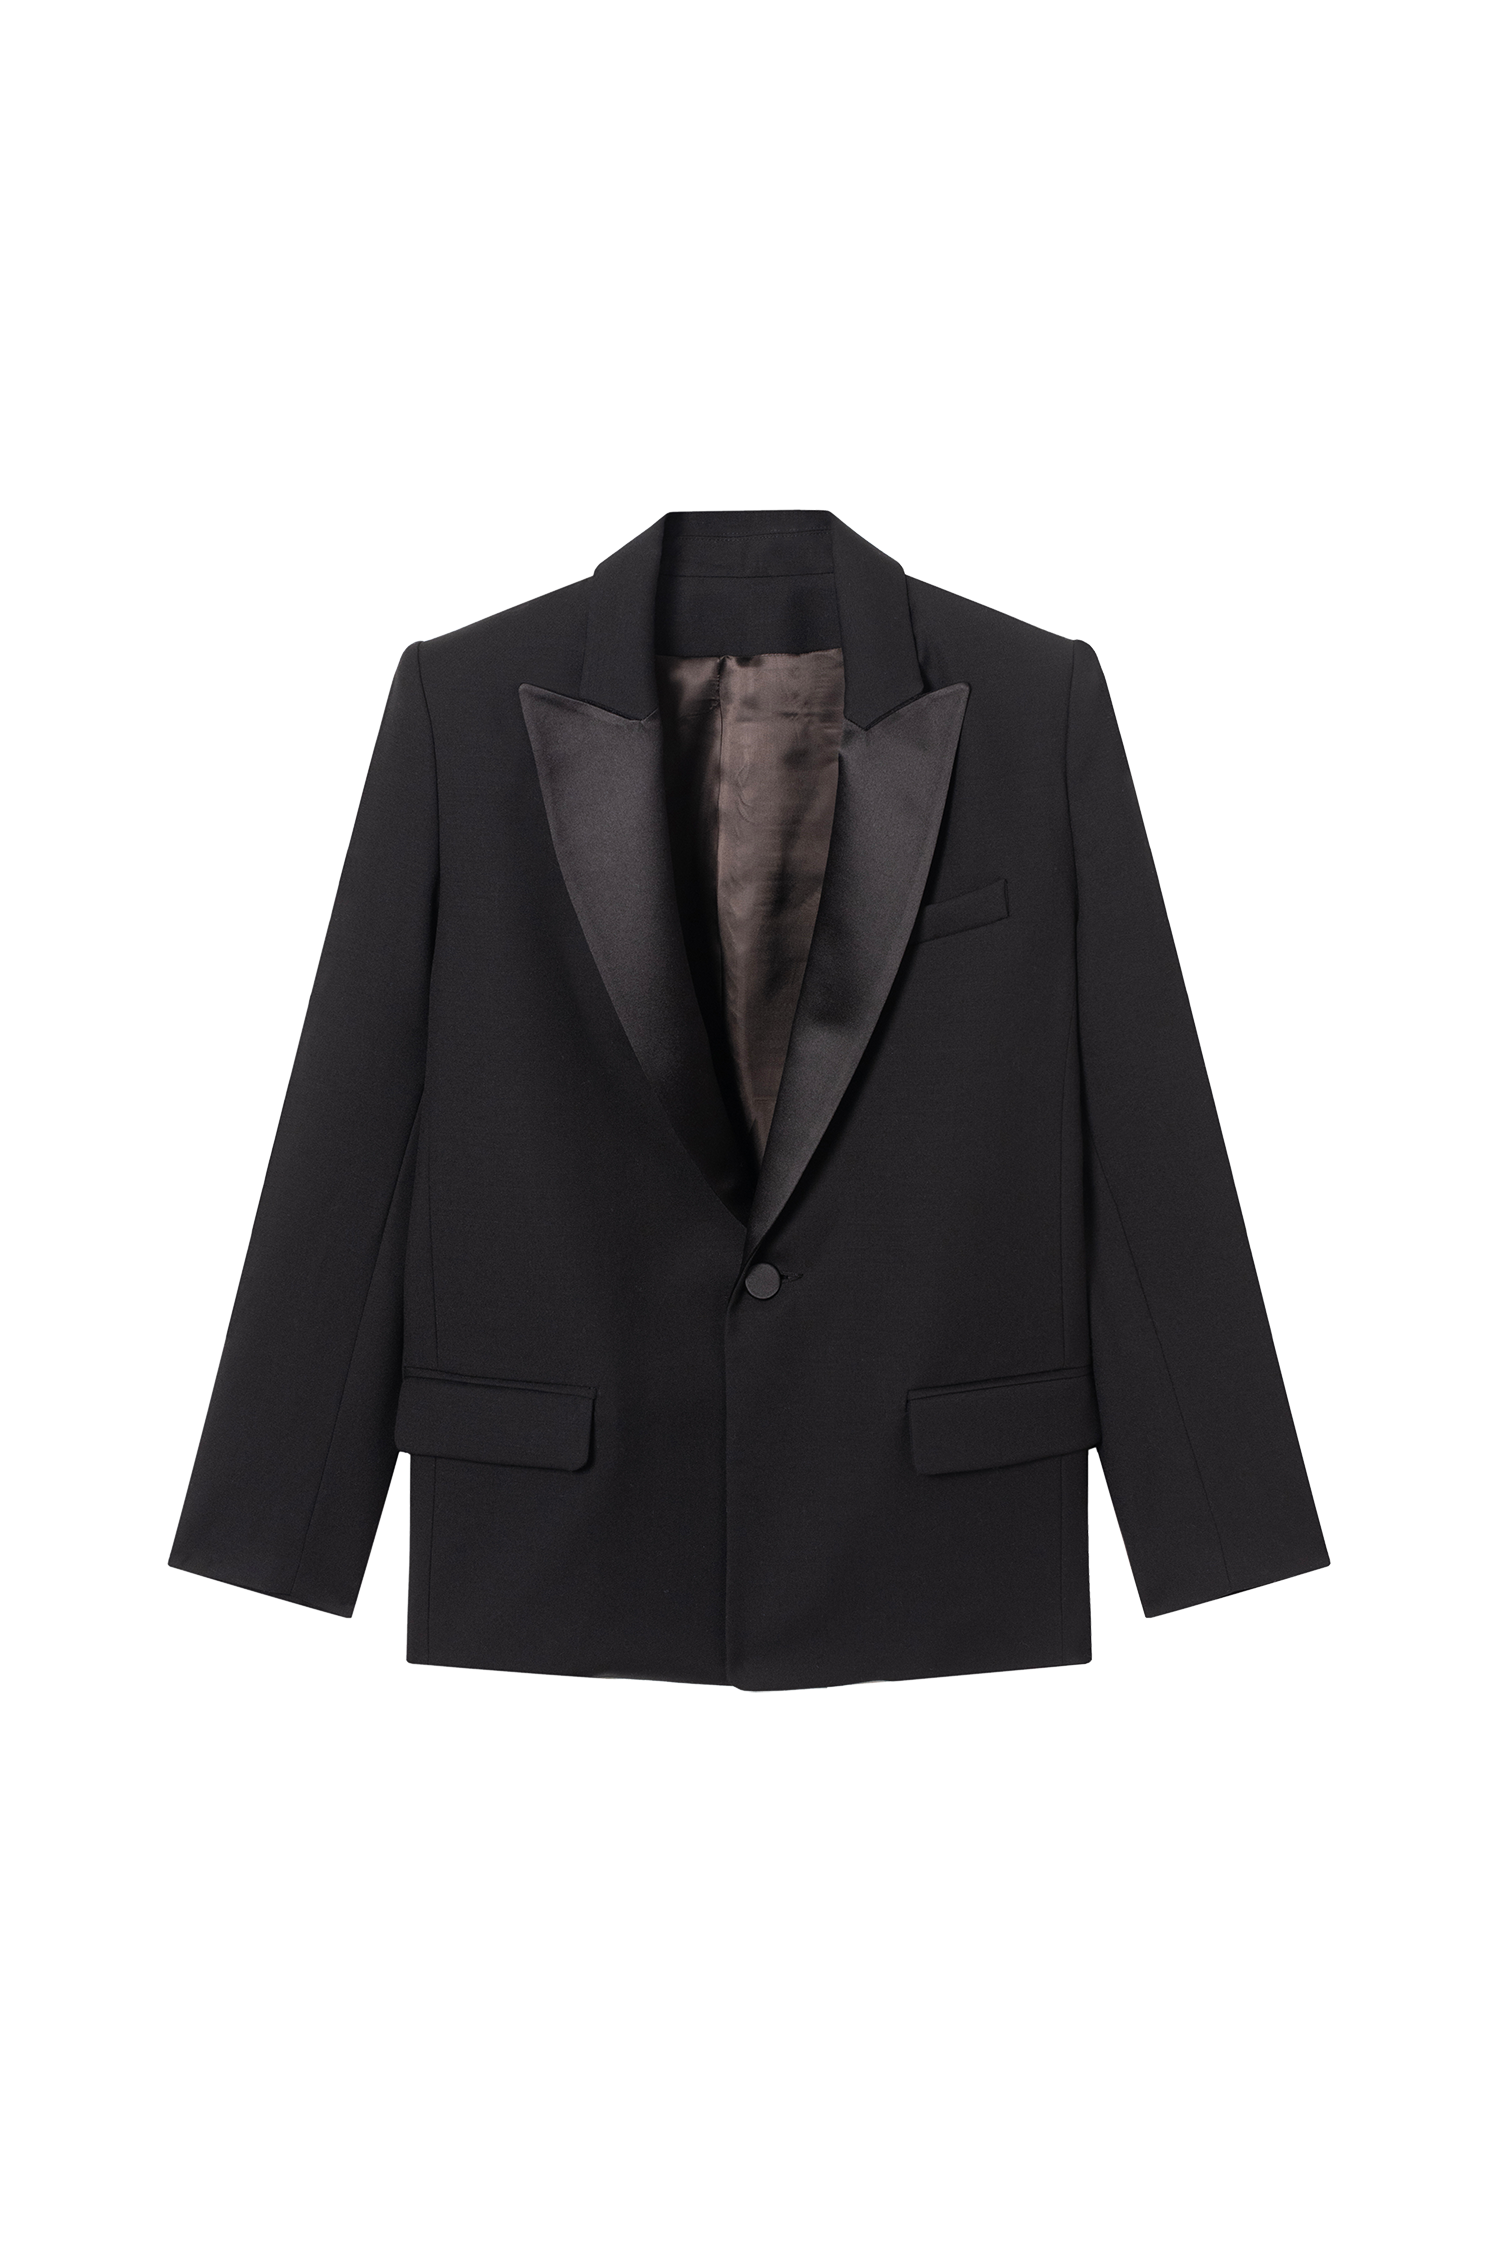 veste smoking femme col satin noir et grain de poudre en laine made in France par Facettes Studio